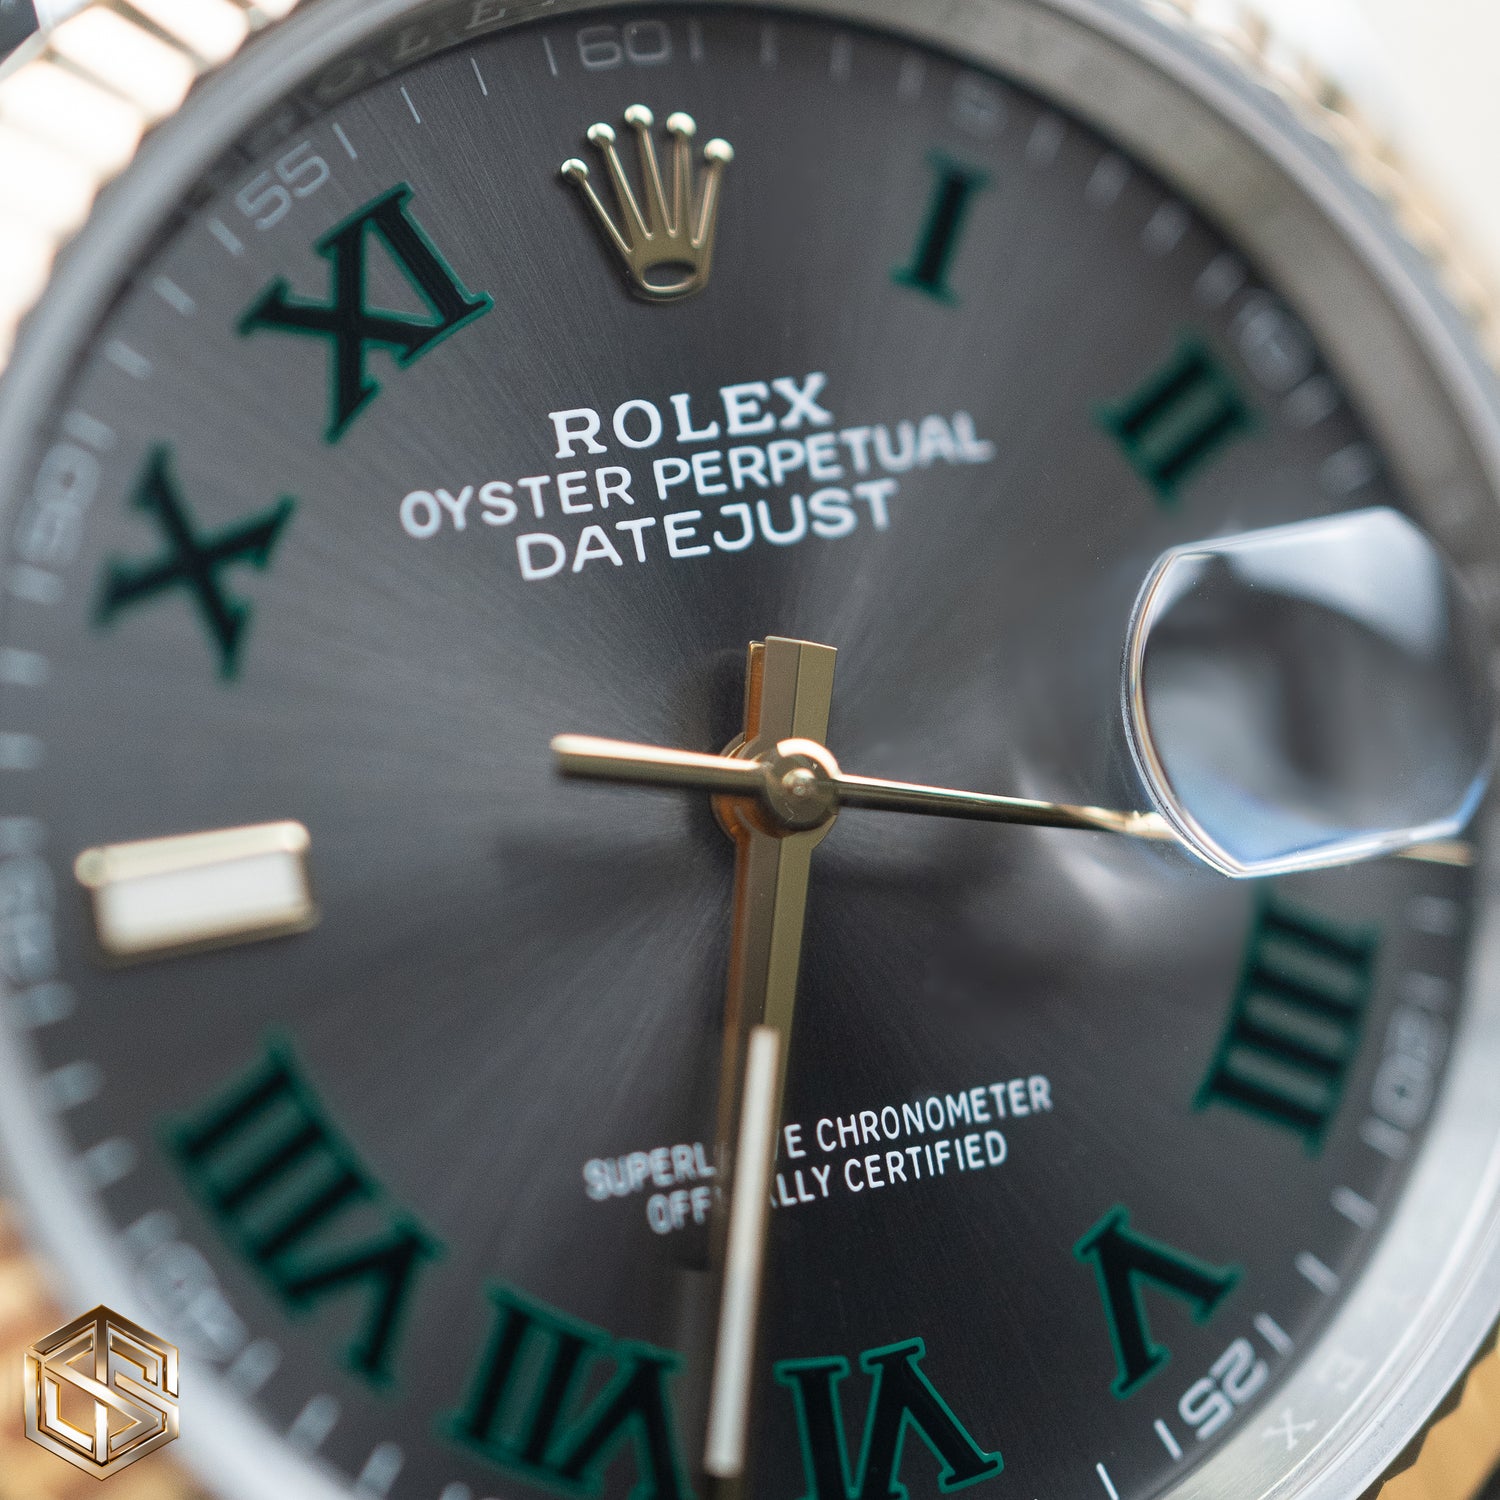 Rolex 126233 Datejust 36 Wimbledon Dial Oyster Bracelet 2021 Full Set Watch